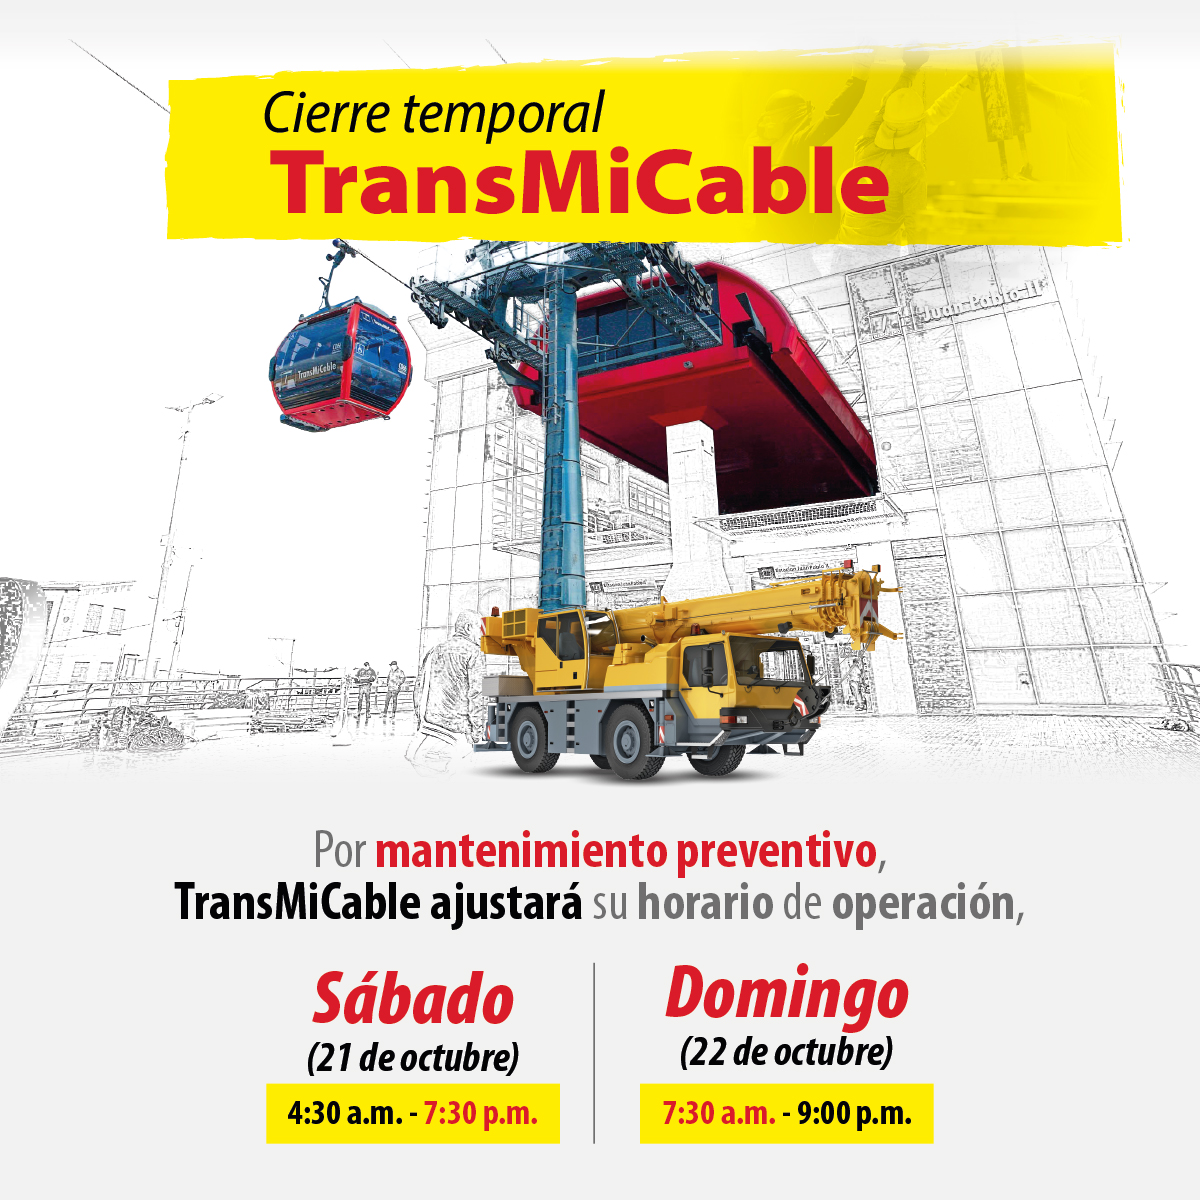 TransMiCable ajustará su horario de operación el 21 y 22 de octubre